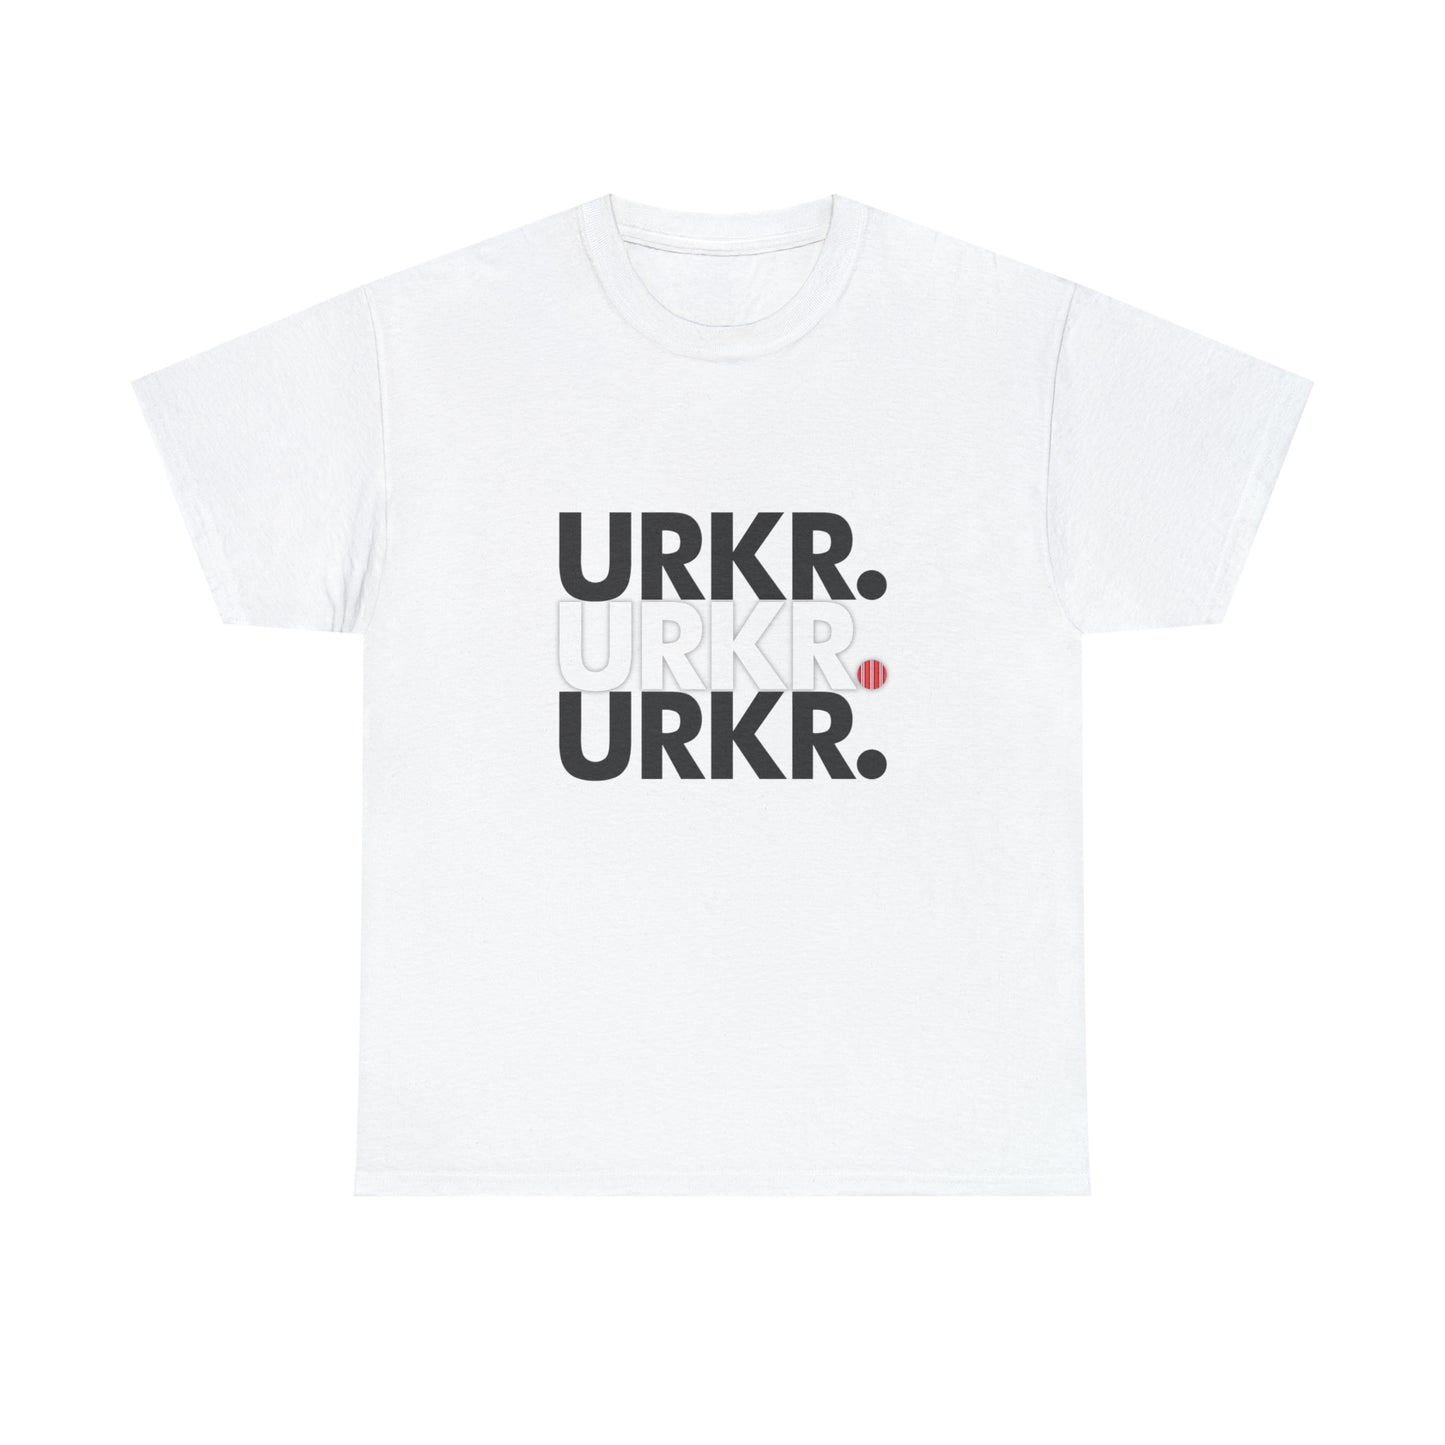 URKR. T-shirt By JDBexclusive